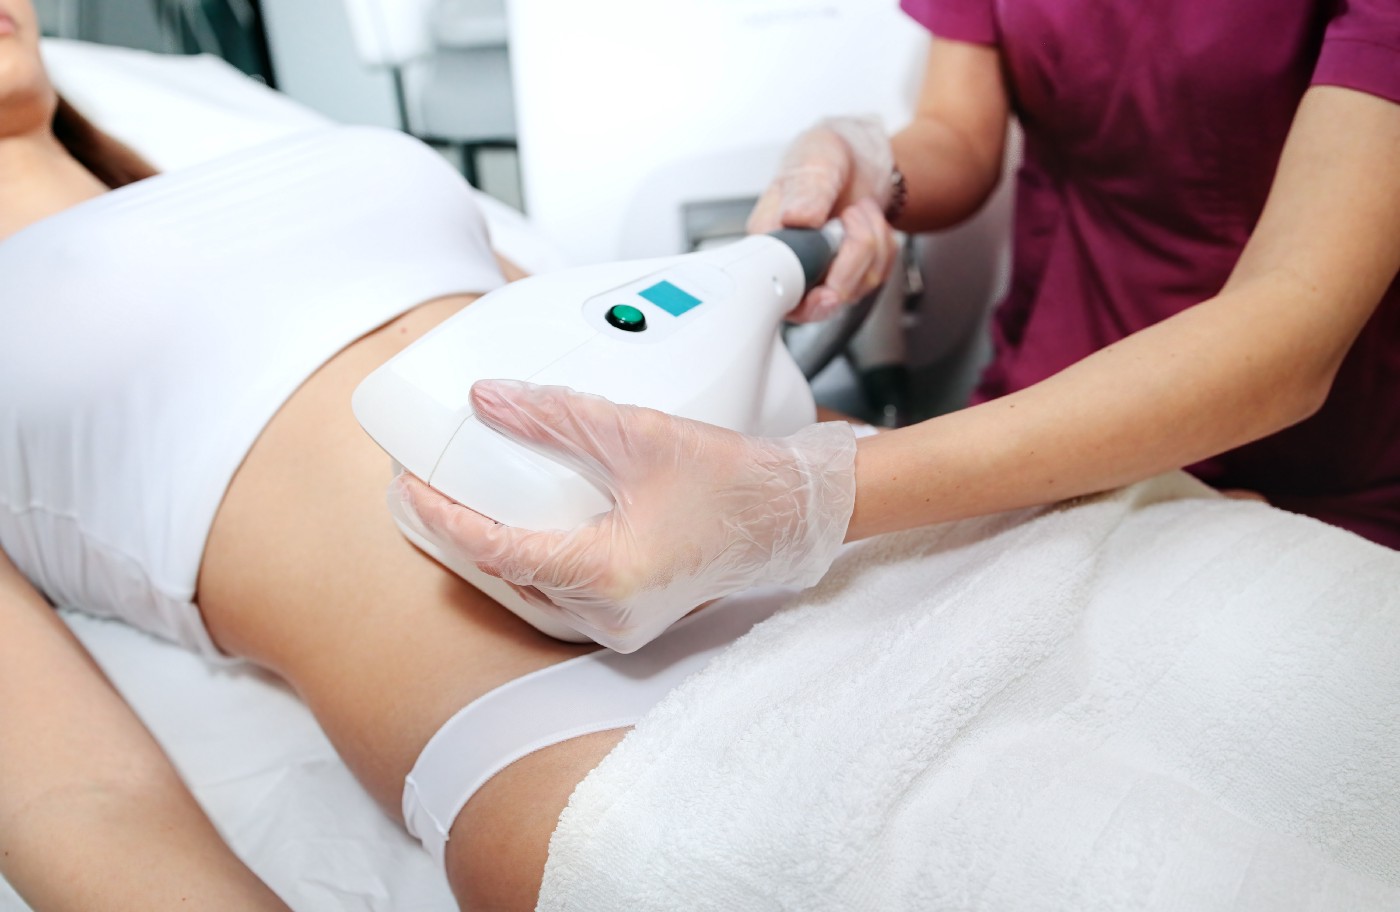 woman receiving coolsculpting procedure; cosmetic fat loss procedure